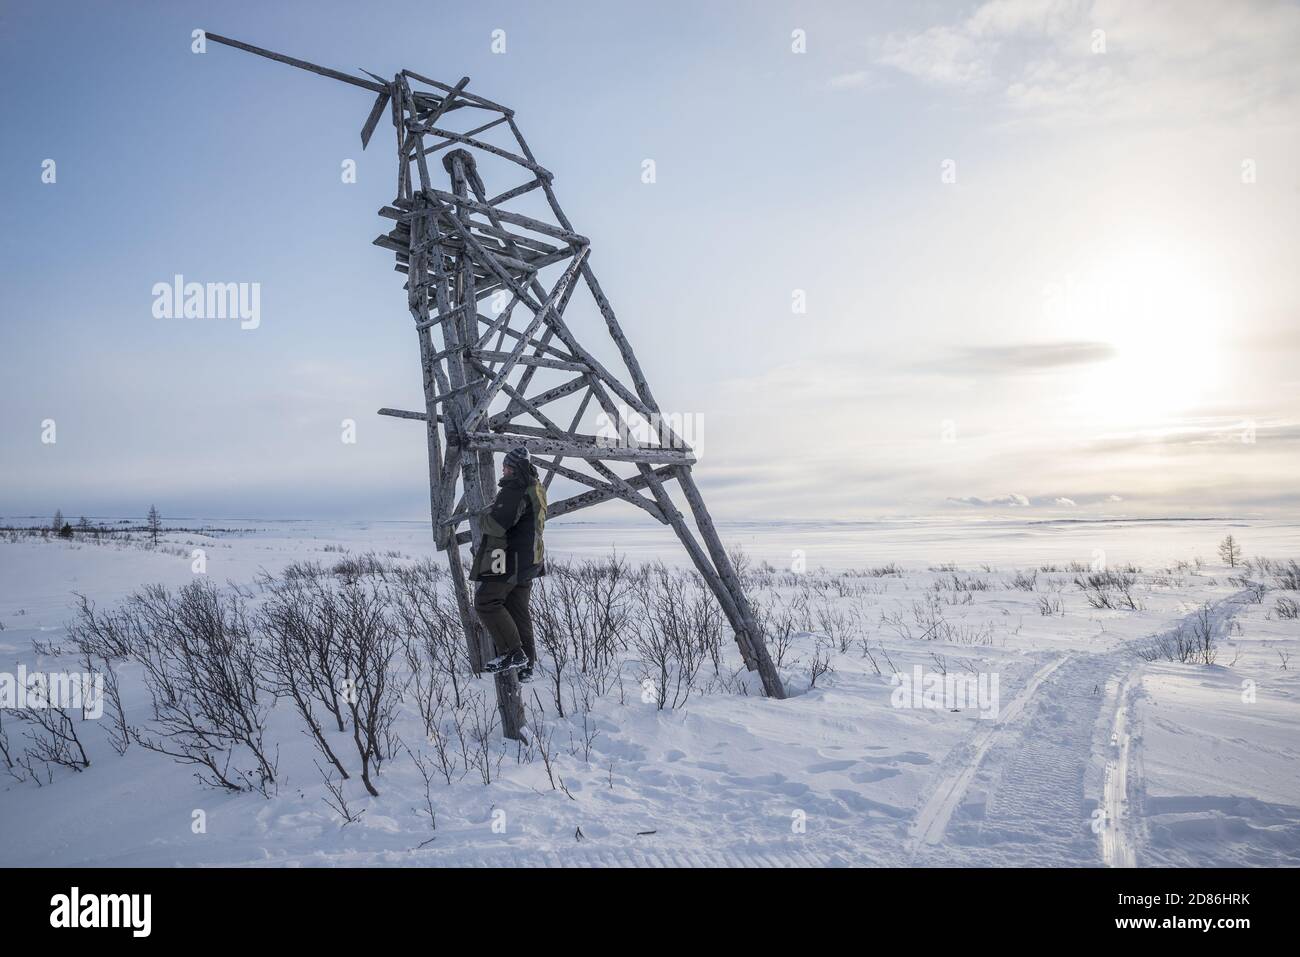 Un homme montant un treillis de bois pour trouver une couverture téléphonique dans un paysage de toundra enneigé, Yamalo-Nenets Autonomous Okrug, Russie Banque D'Images